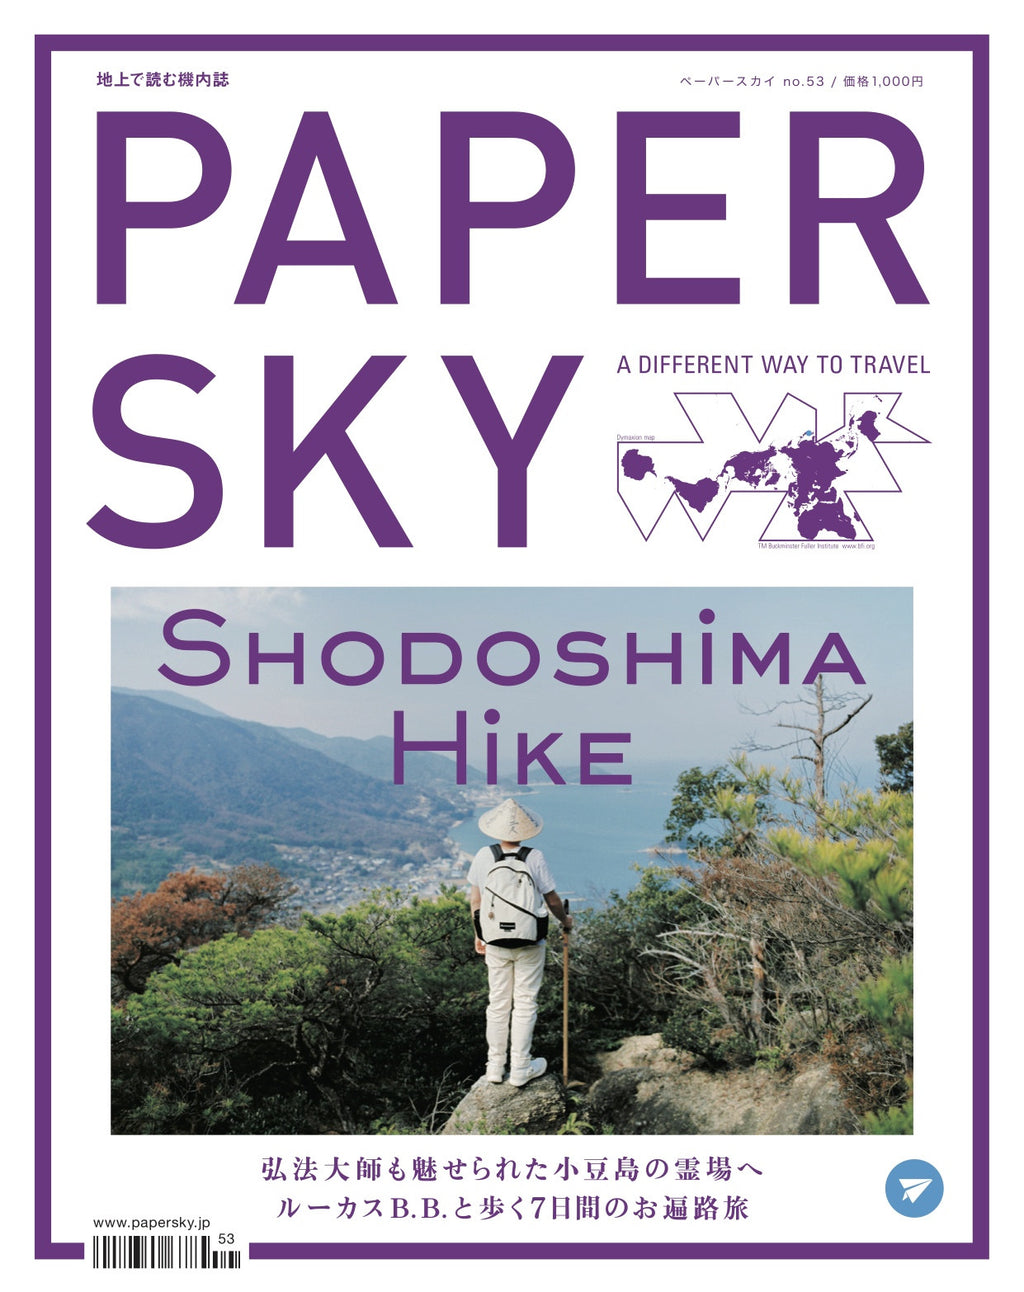 小豆島, ルーカスB.B.と歩く, Papersky magazine, Shodoshima